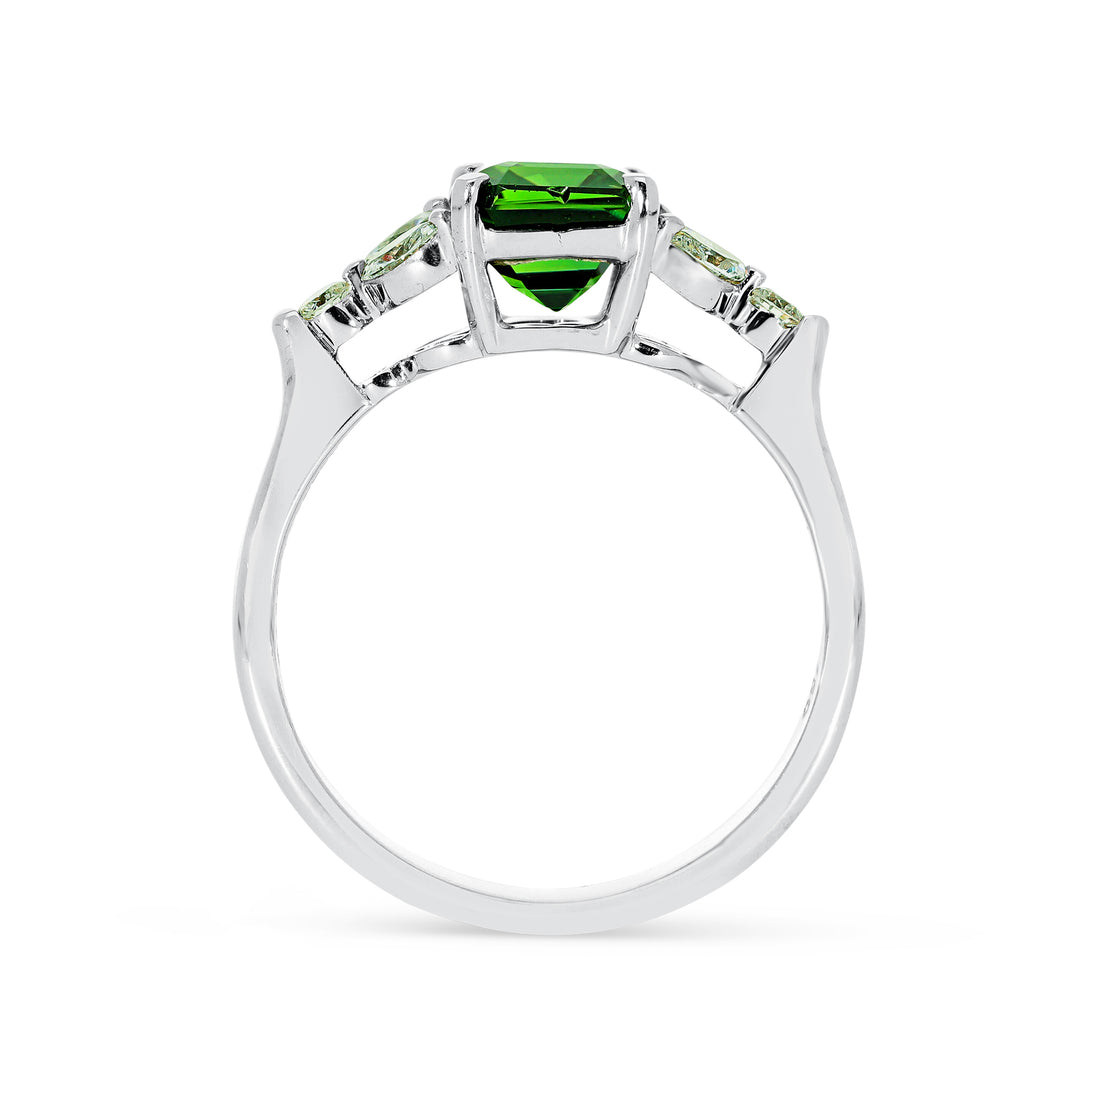 Octagonal Cut Natural Fancy Green Sapphire Ring - 3.1 Carat